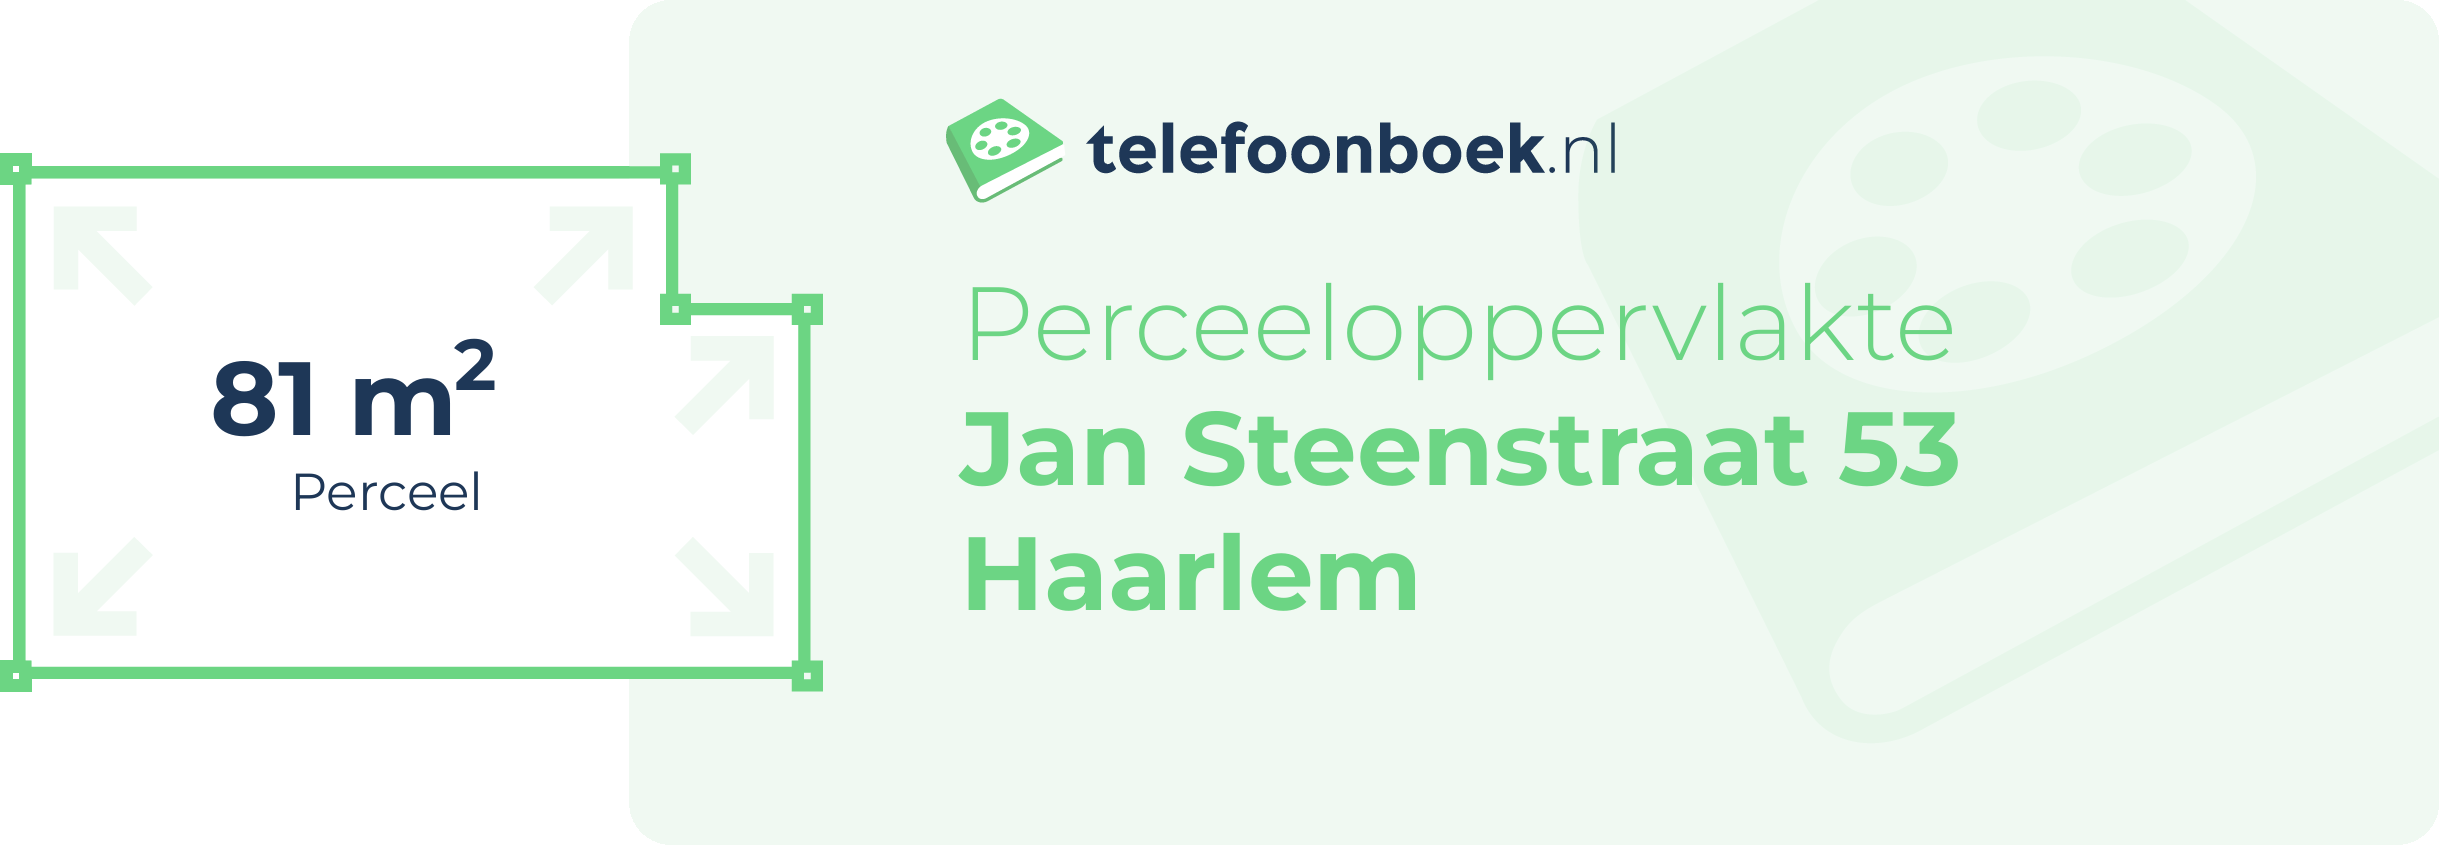 Perceeloppervlakte Jan Steenstraat 53 Haarlem